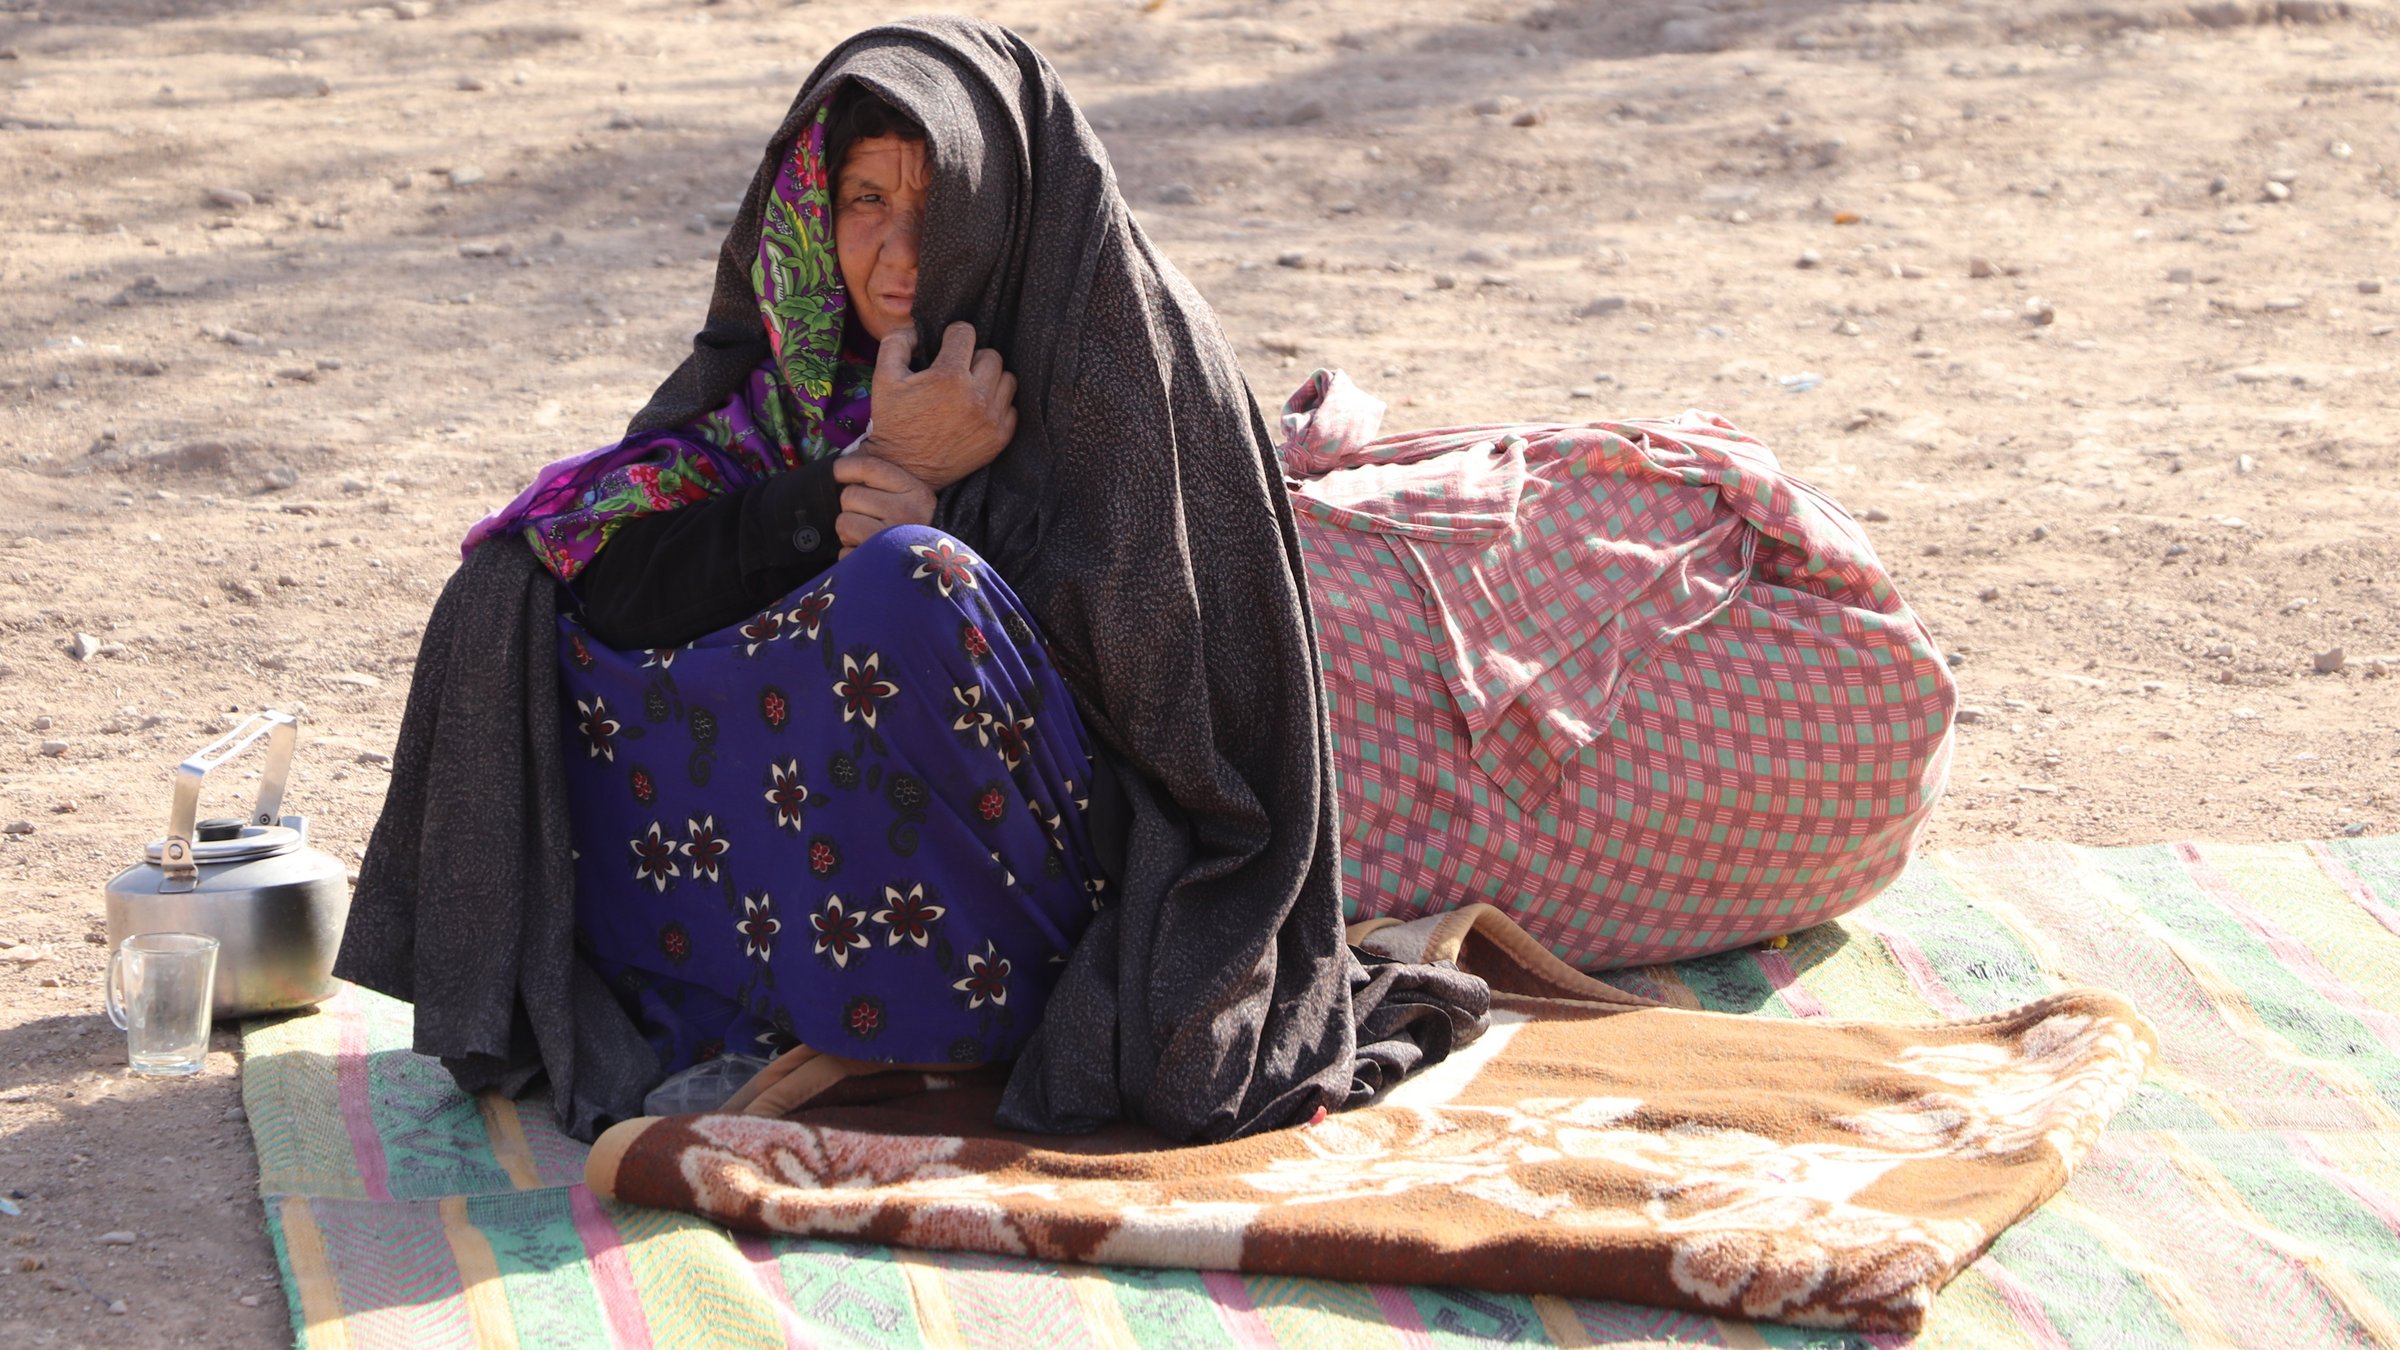 Eine geflüchtete Frau in Afghanistan